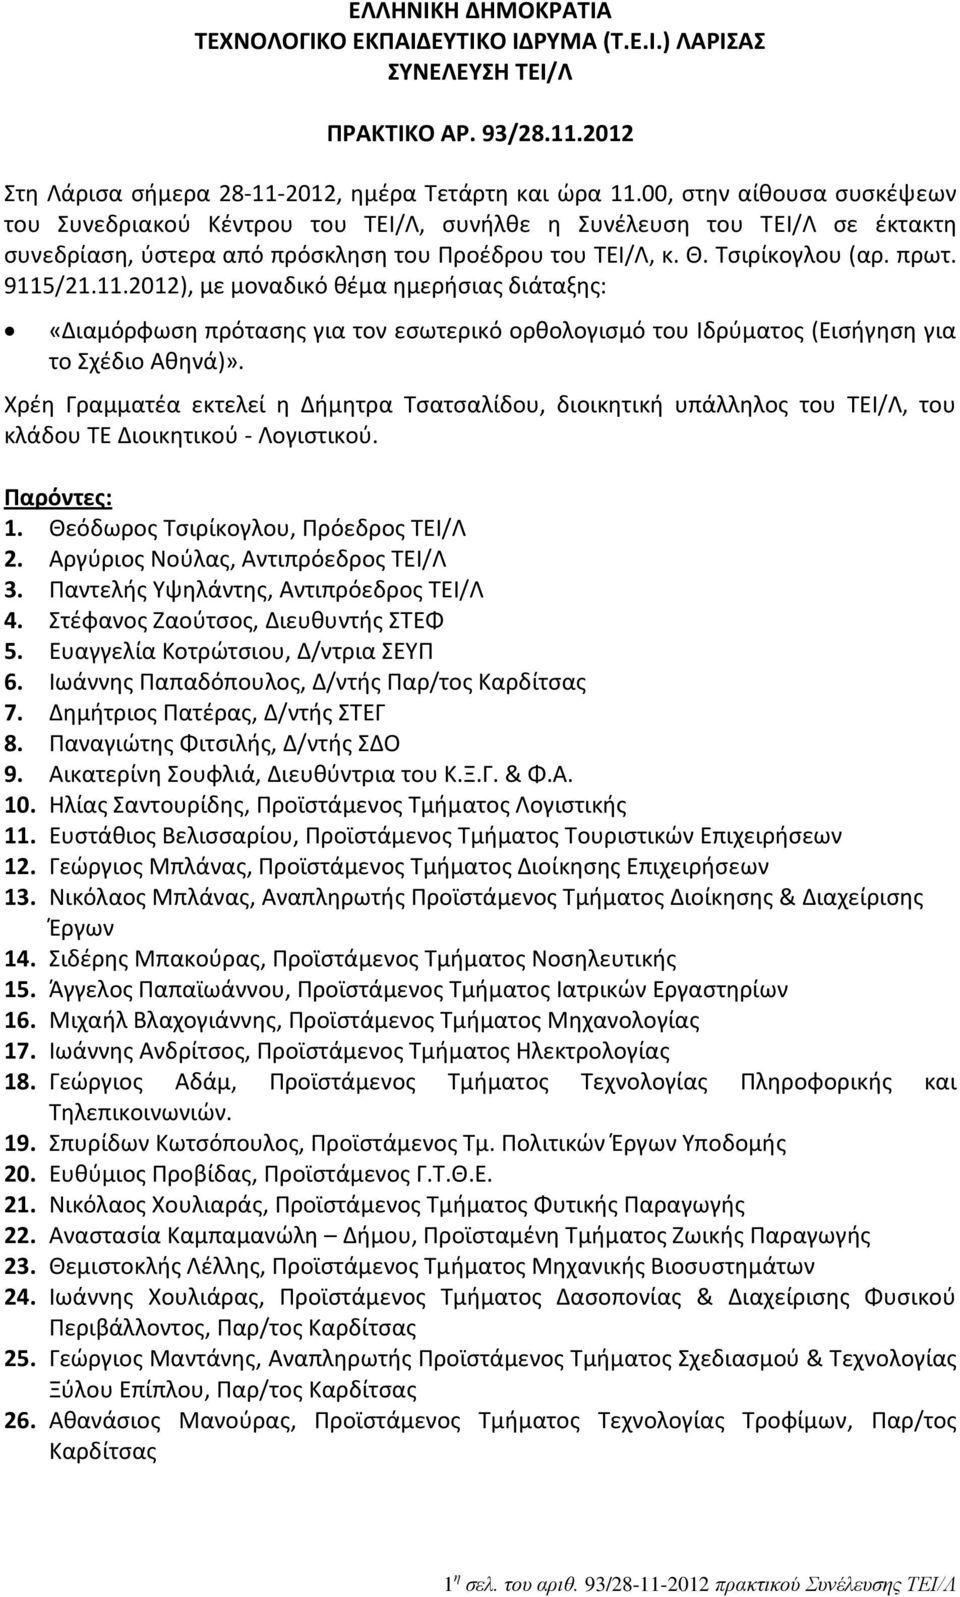 /21.11.2012), με μοναδικό θέμα ημερήσιας διάταξης: «Διαμόρφωση πρότασης για τον εσωτερικό ορθολογισμό του Ιδρύματος (Εισήγηση για το Σχέδιο Αθηνά)».